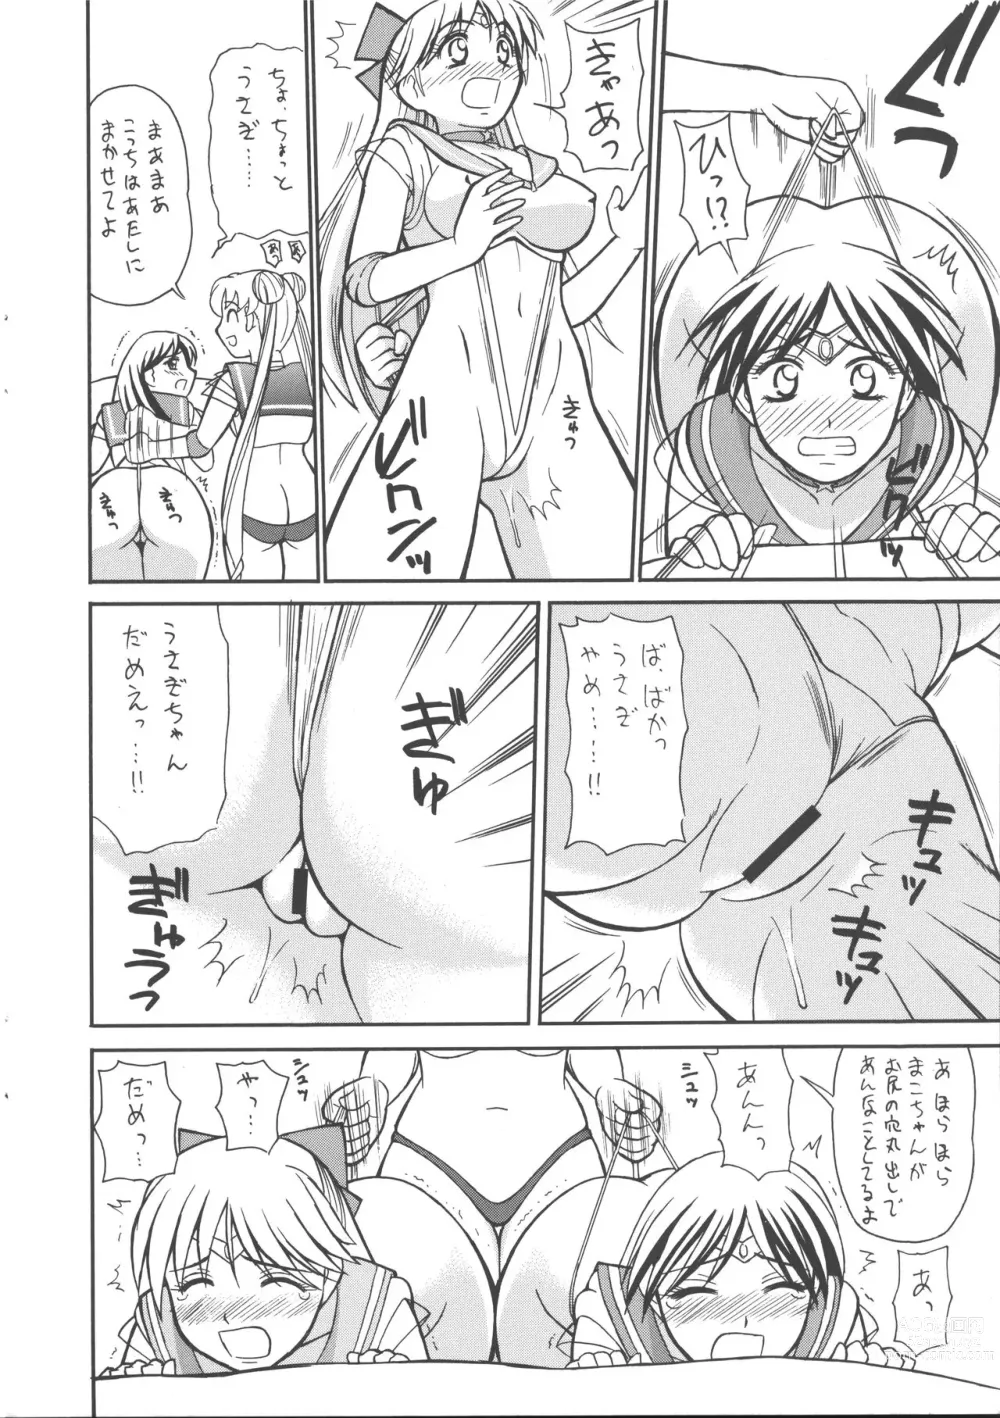 Page 11 of doujinshi Cool Biz Shiyou